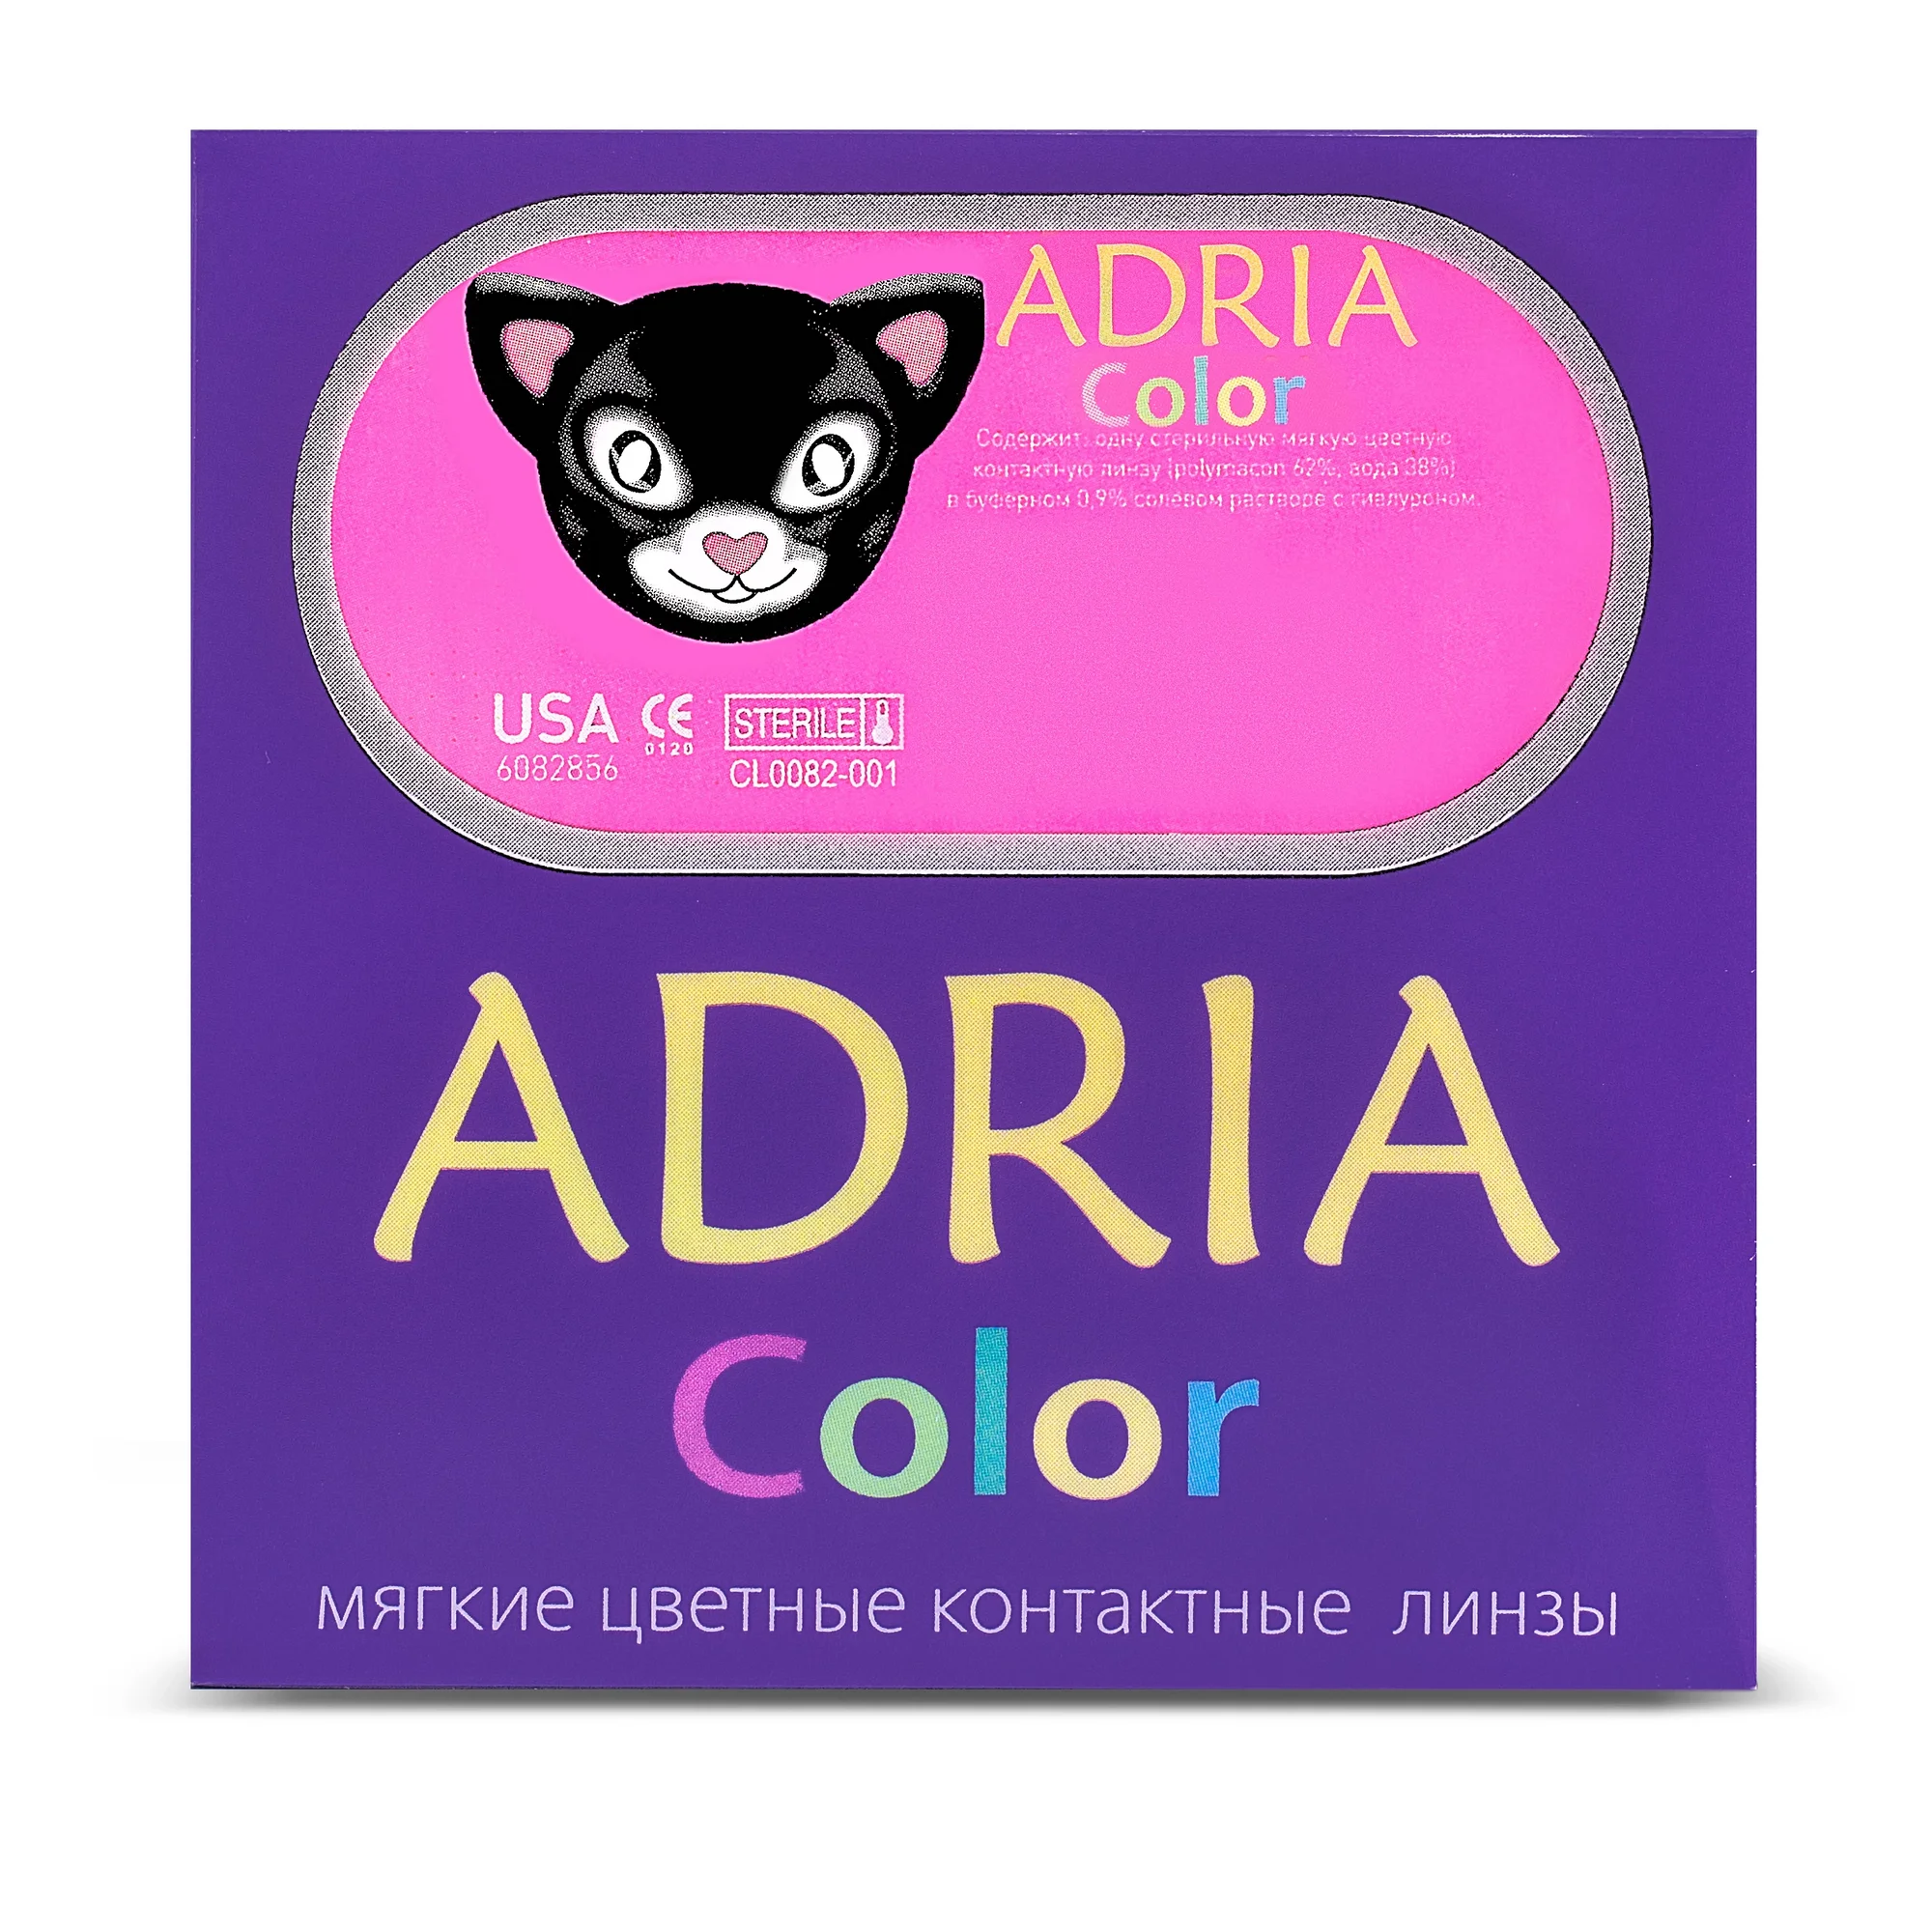 COLOR BOX ADRIA Color 2 Tone Brown (карий)